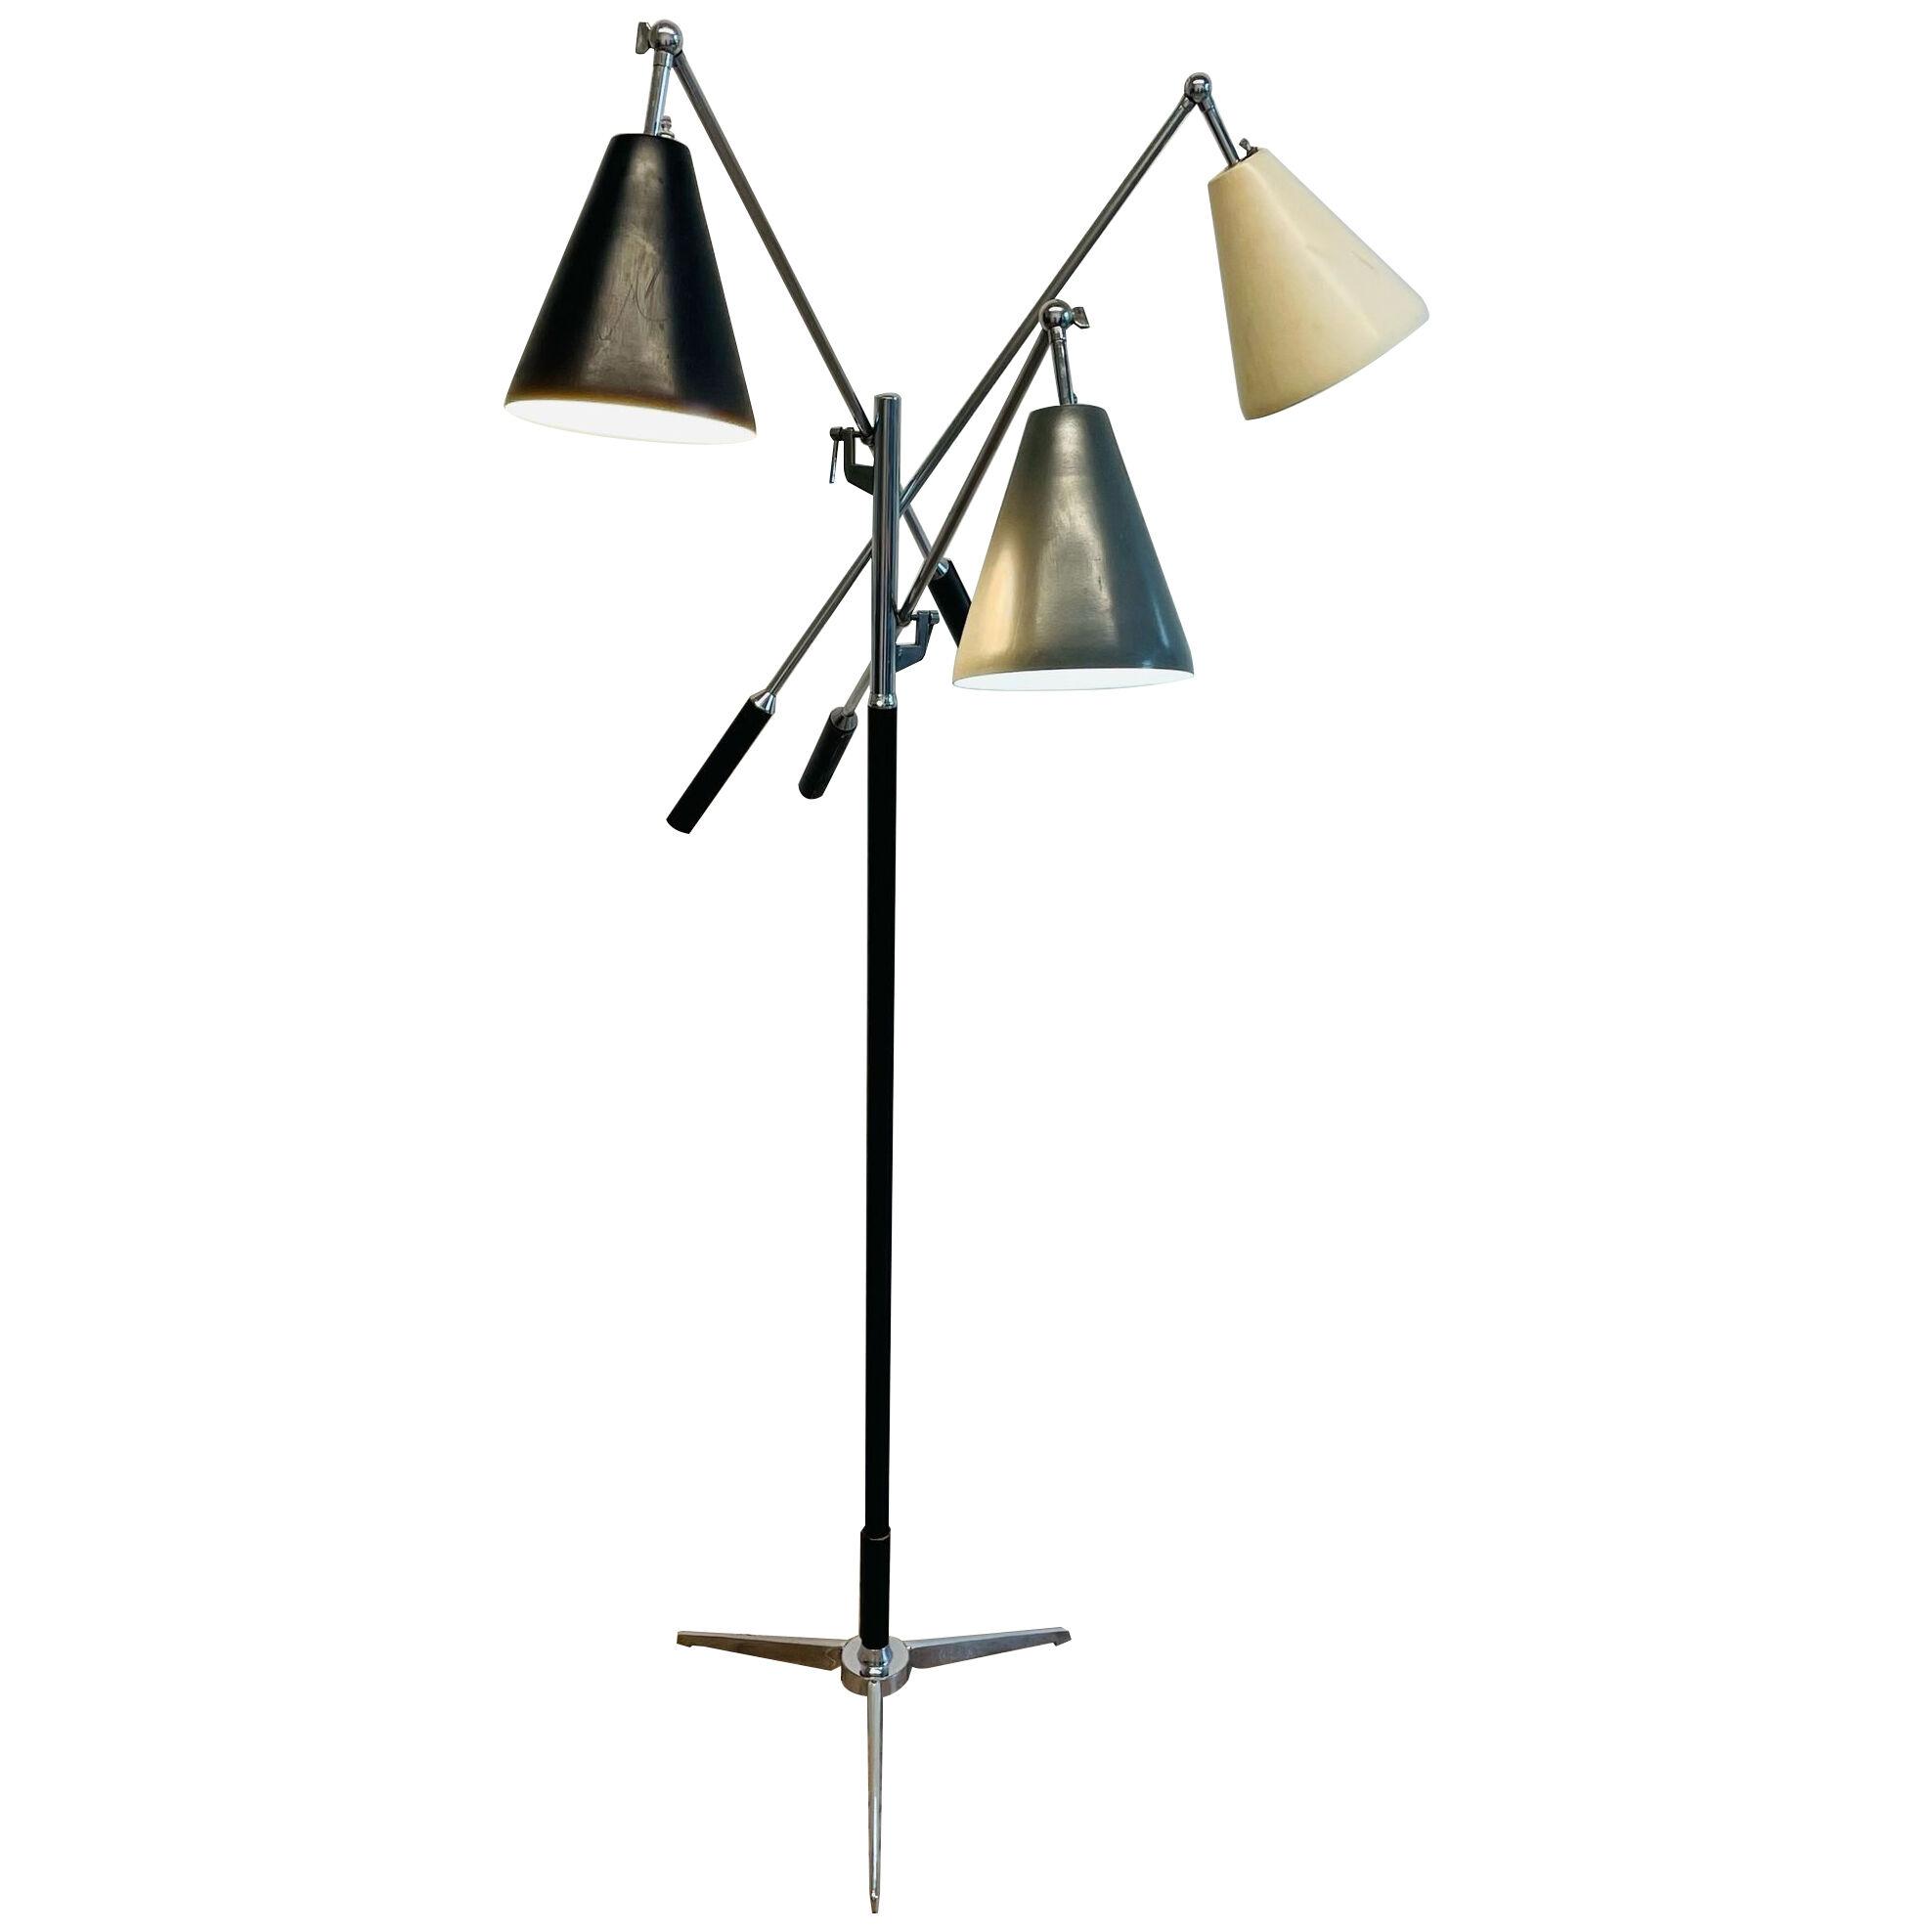 Italian Mid-Century Modern Triennale Floor Lamp by Angelo Lelii for Arredoluce